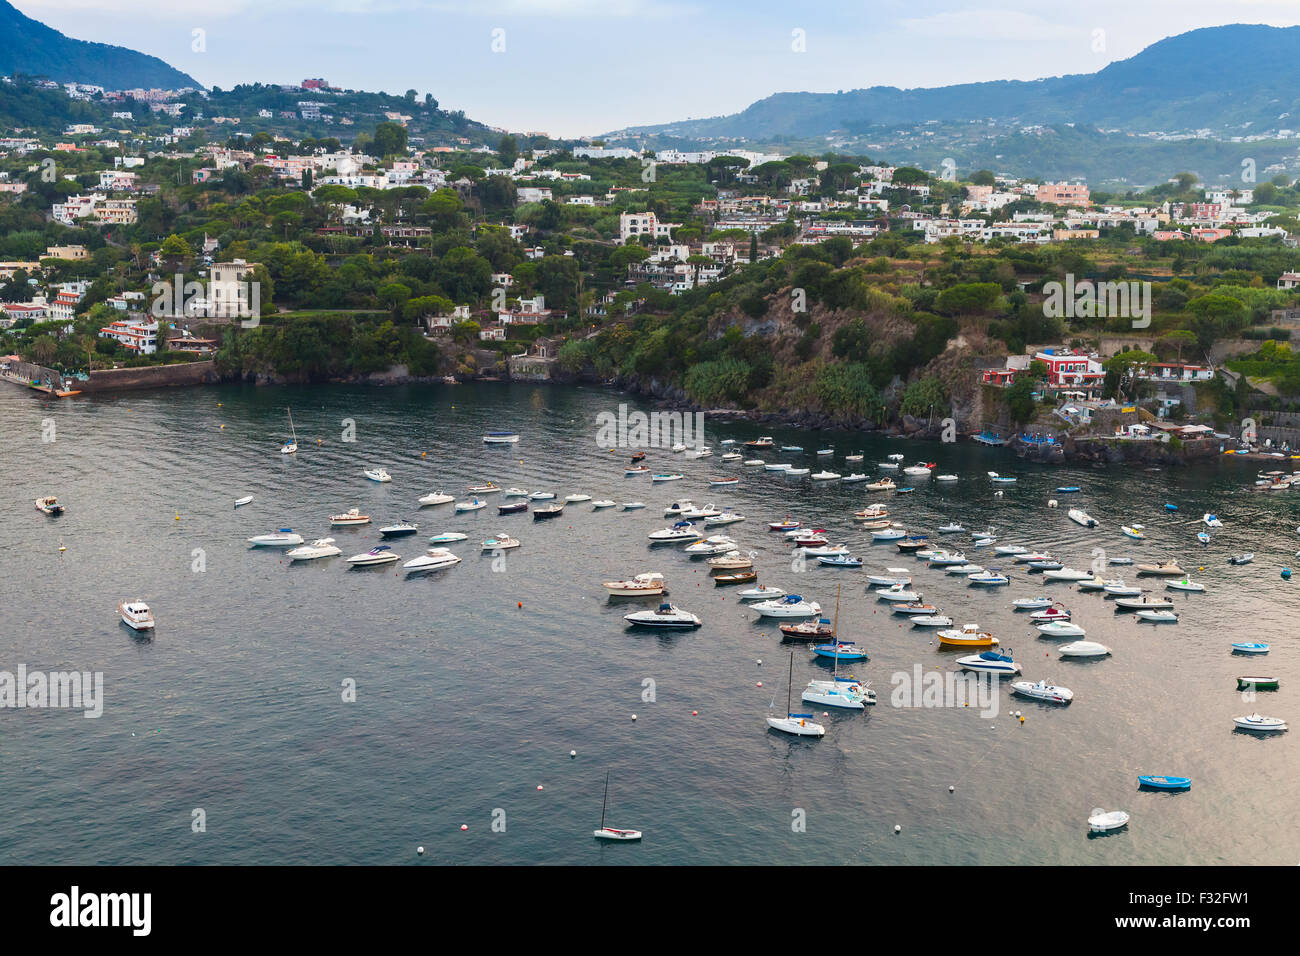 Ischia Porto, coastal landscape with moored boats, Mediterranean Sea, Italy Stock Photo